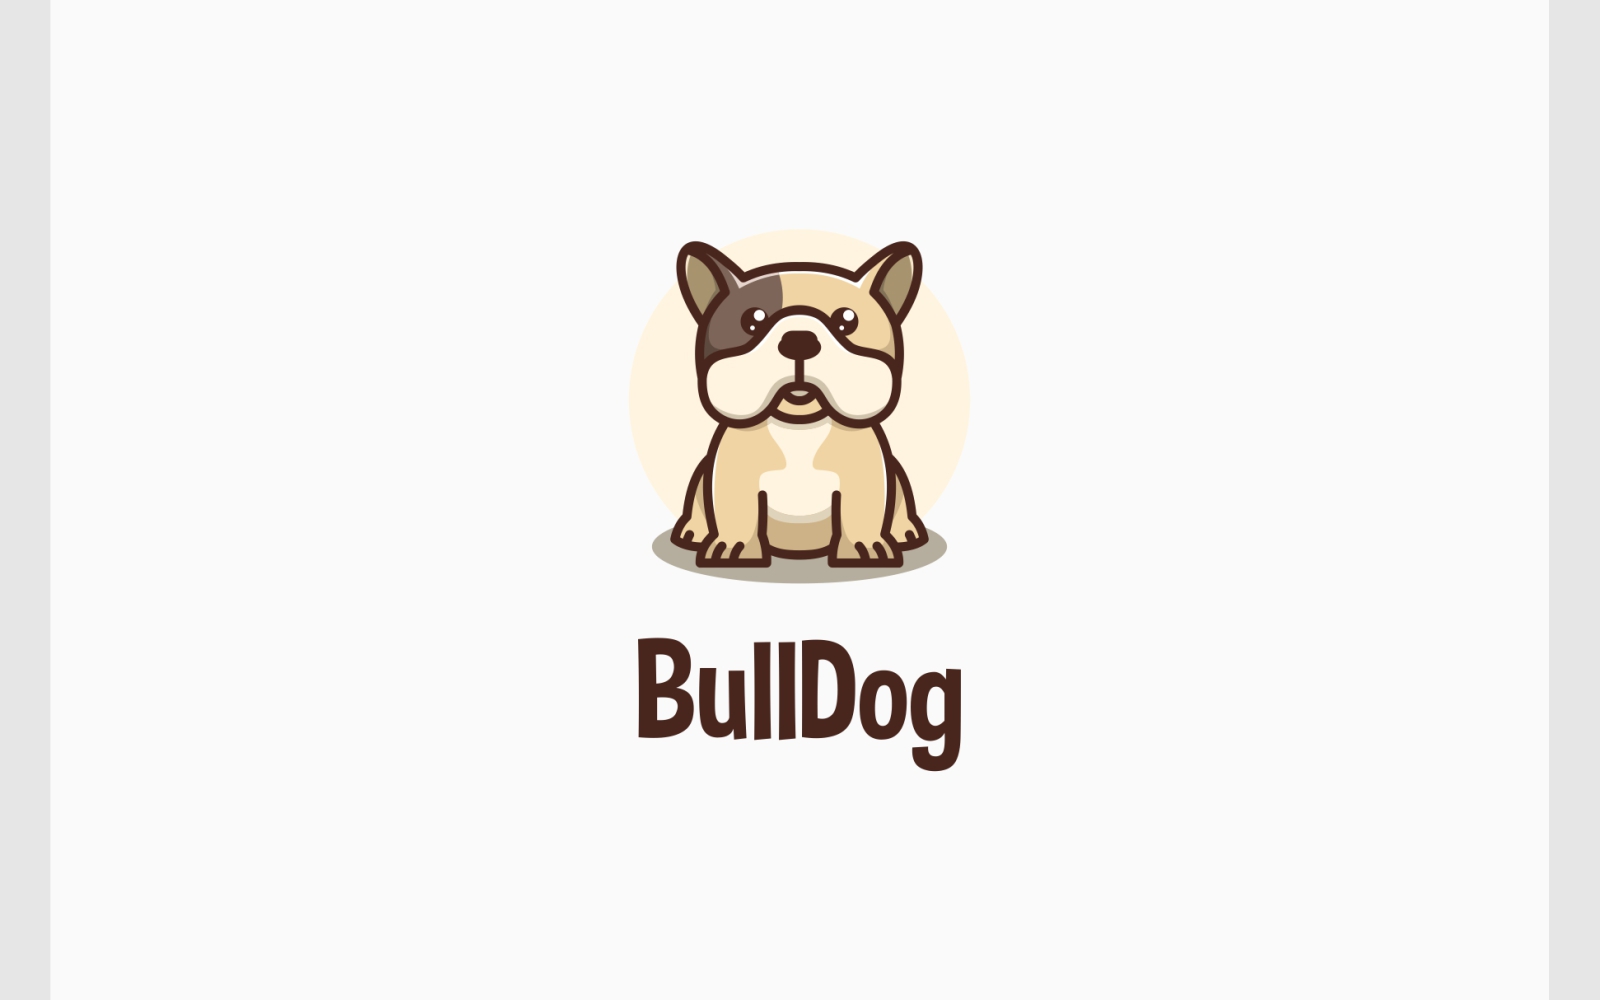 Cute Bulldog Dog Mascot Logo